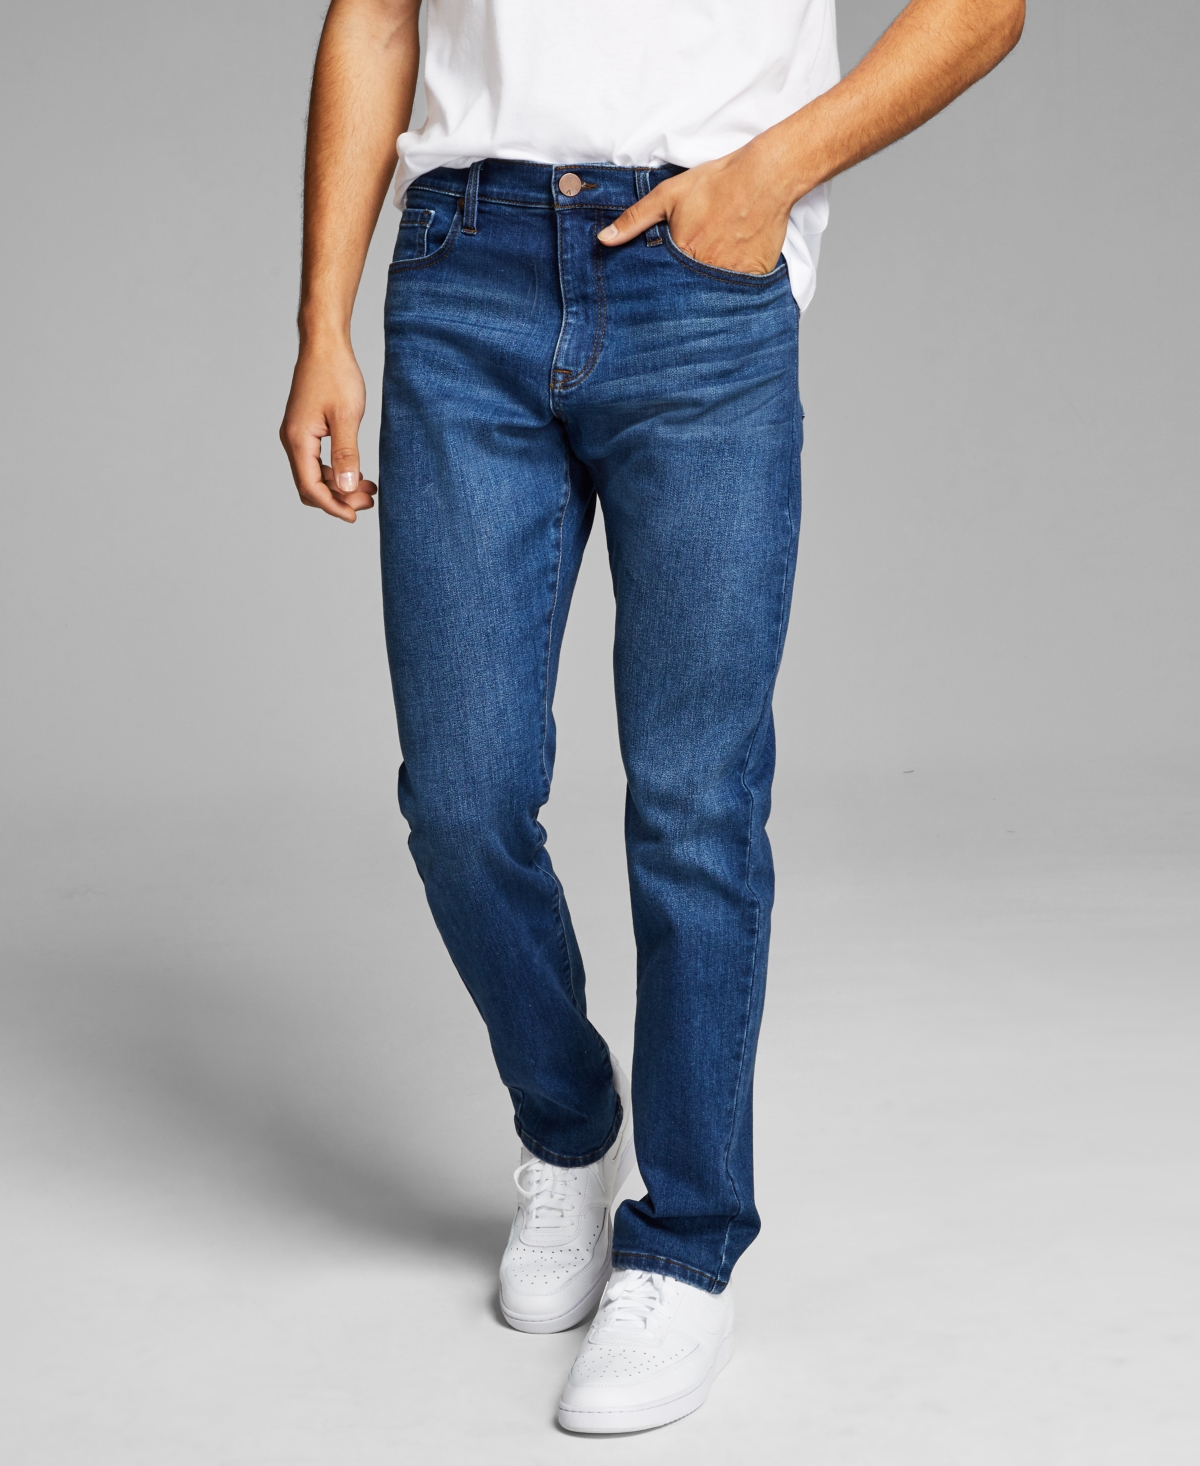 Men's Slim-Fit Stretch Jeans - Super Light Blue Wash